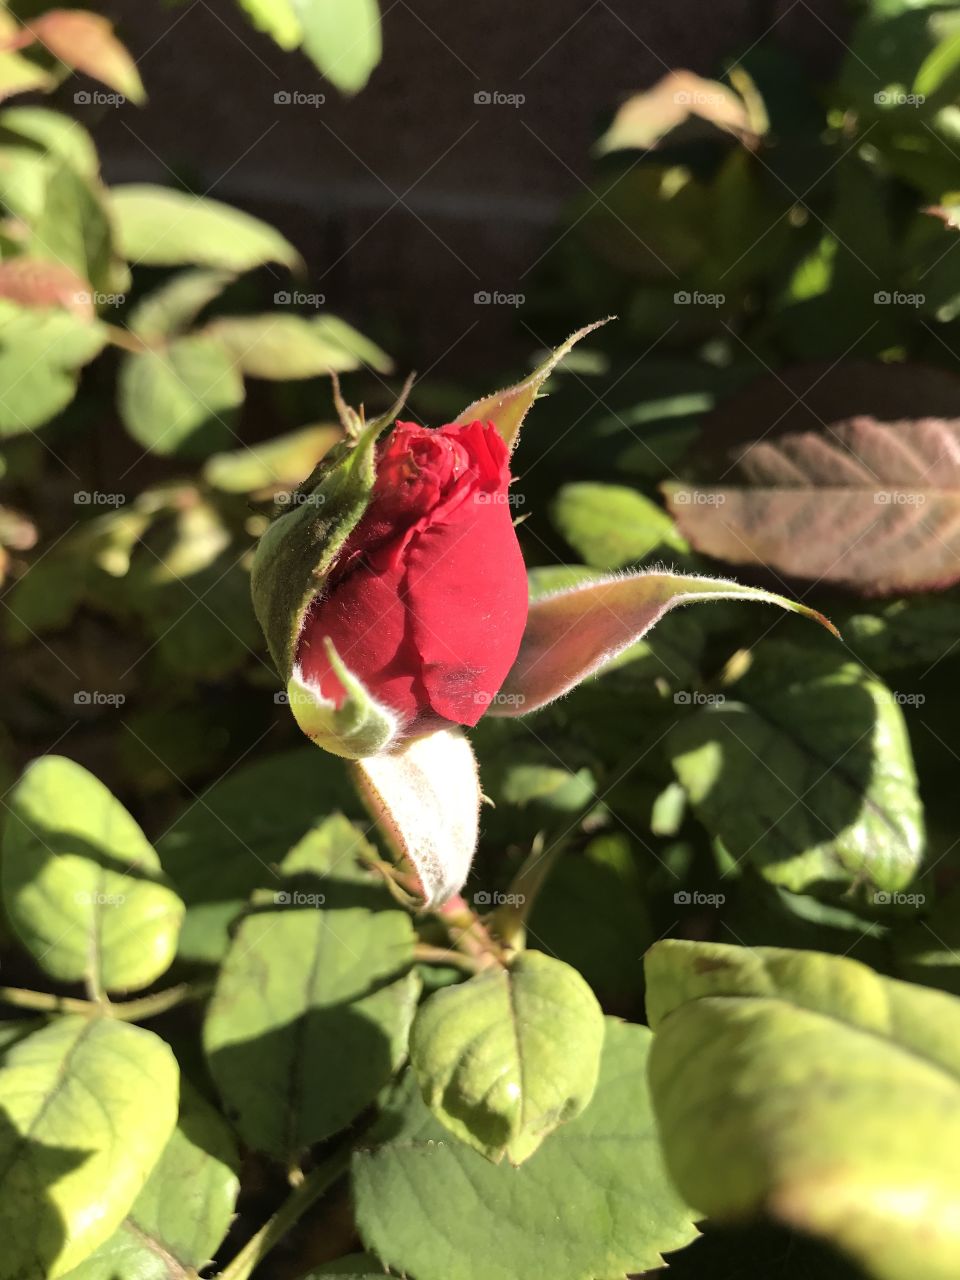 New rosebud